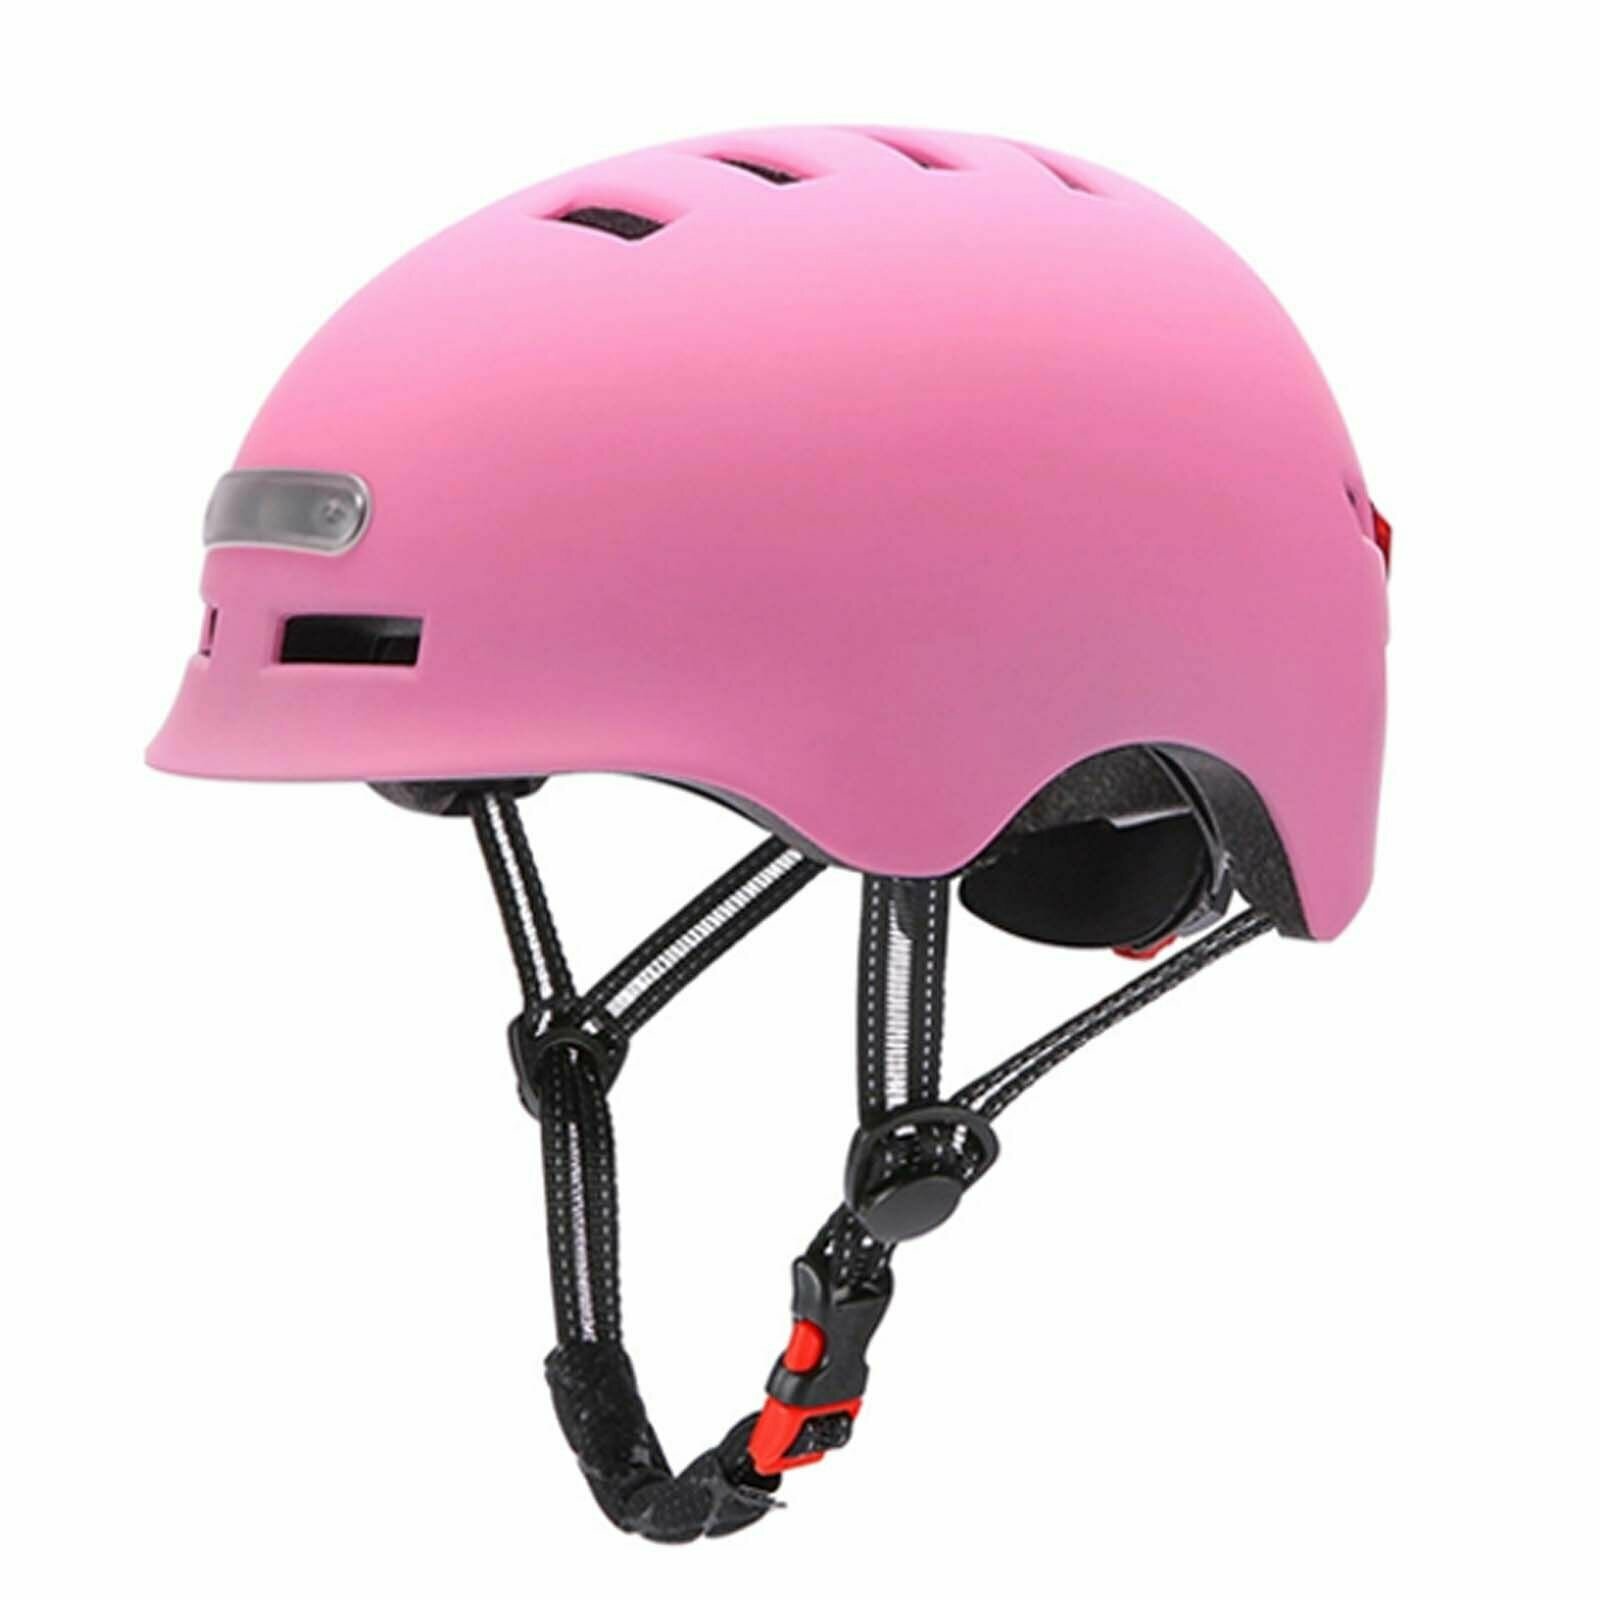 Шлем для велосипеда, электросамоката, гироскутера с подсветкой и фонарем (Розовый)